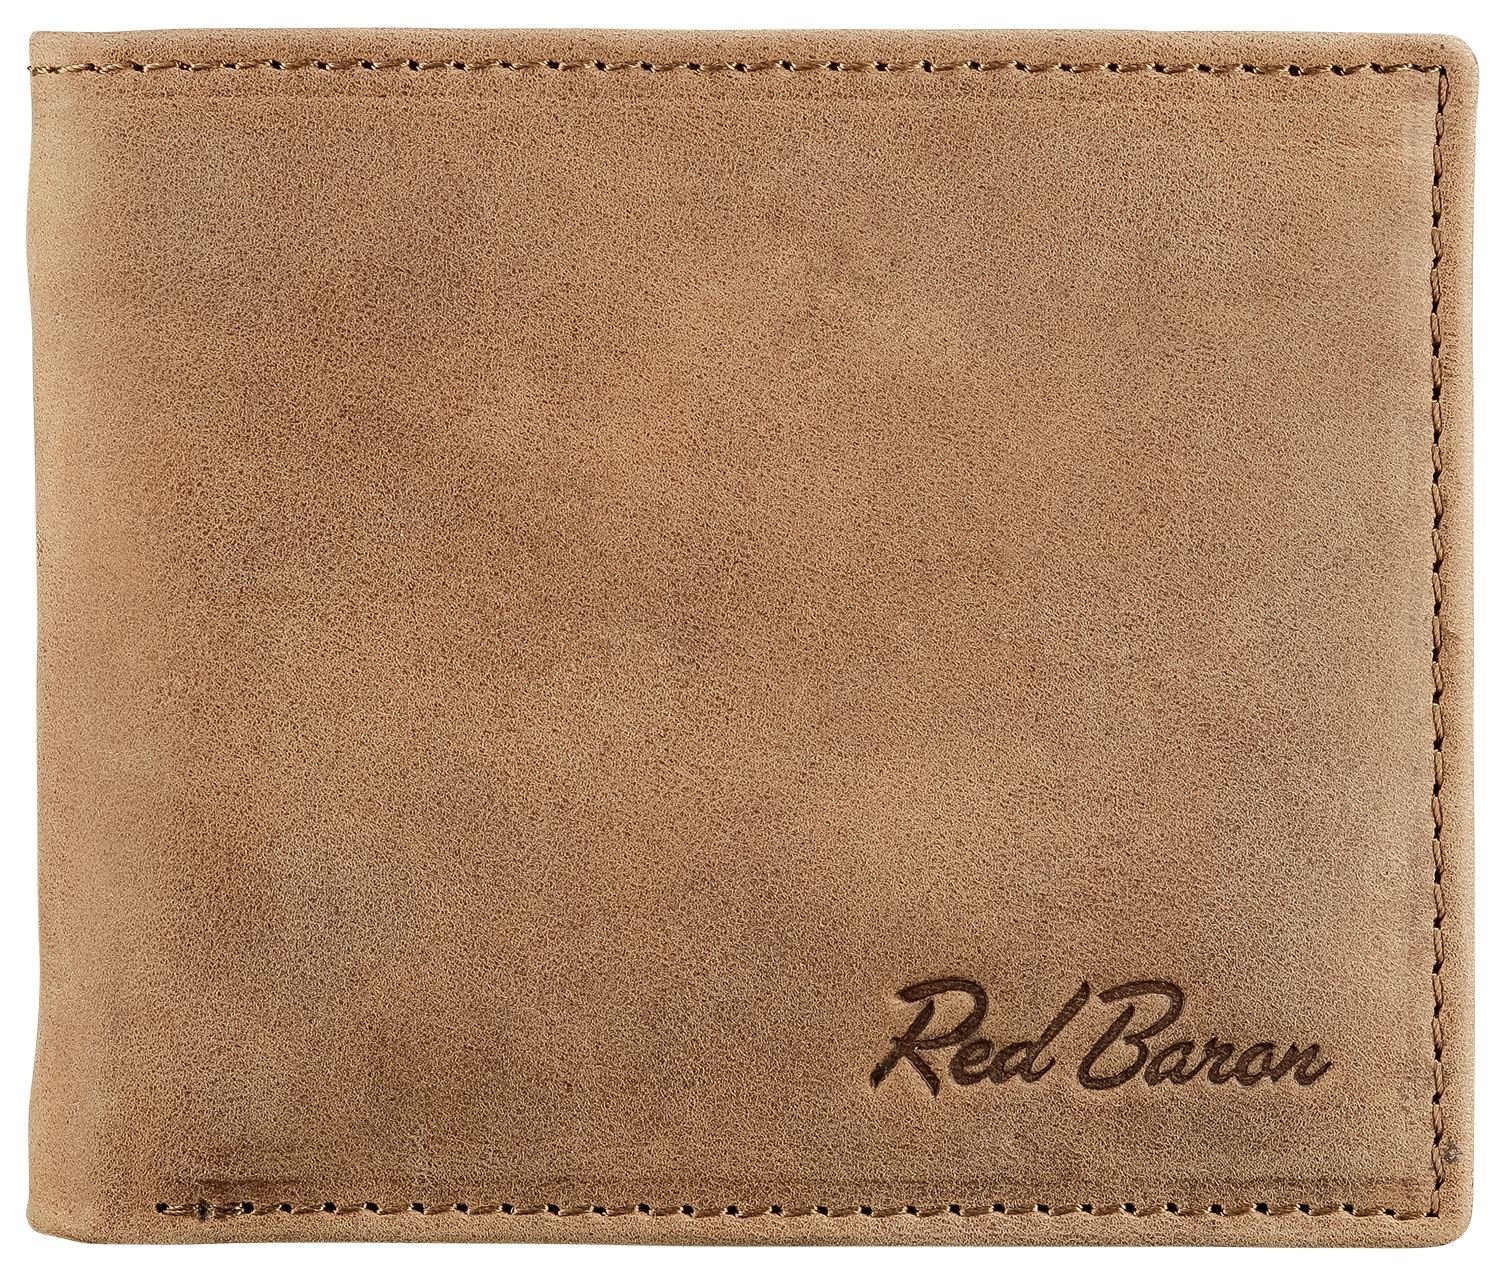 Red Baron Geldbörse RB-WT-008-05, Kreditkartenfächer, Steckfächer, Geldklammer, schlicht